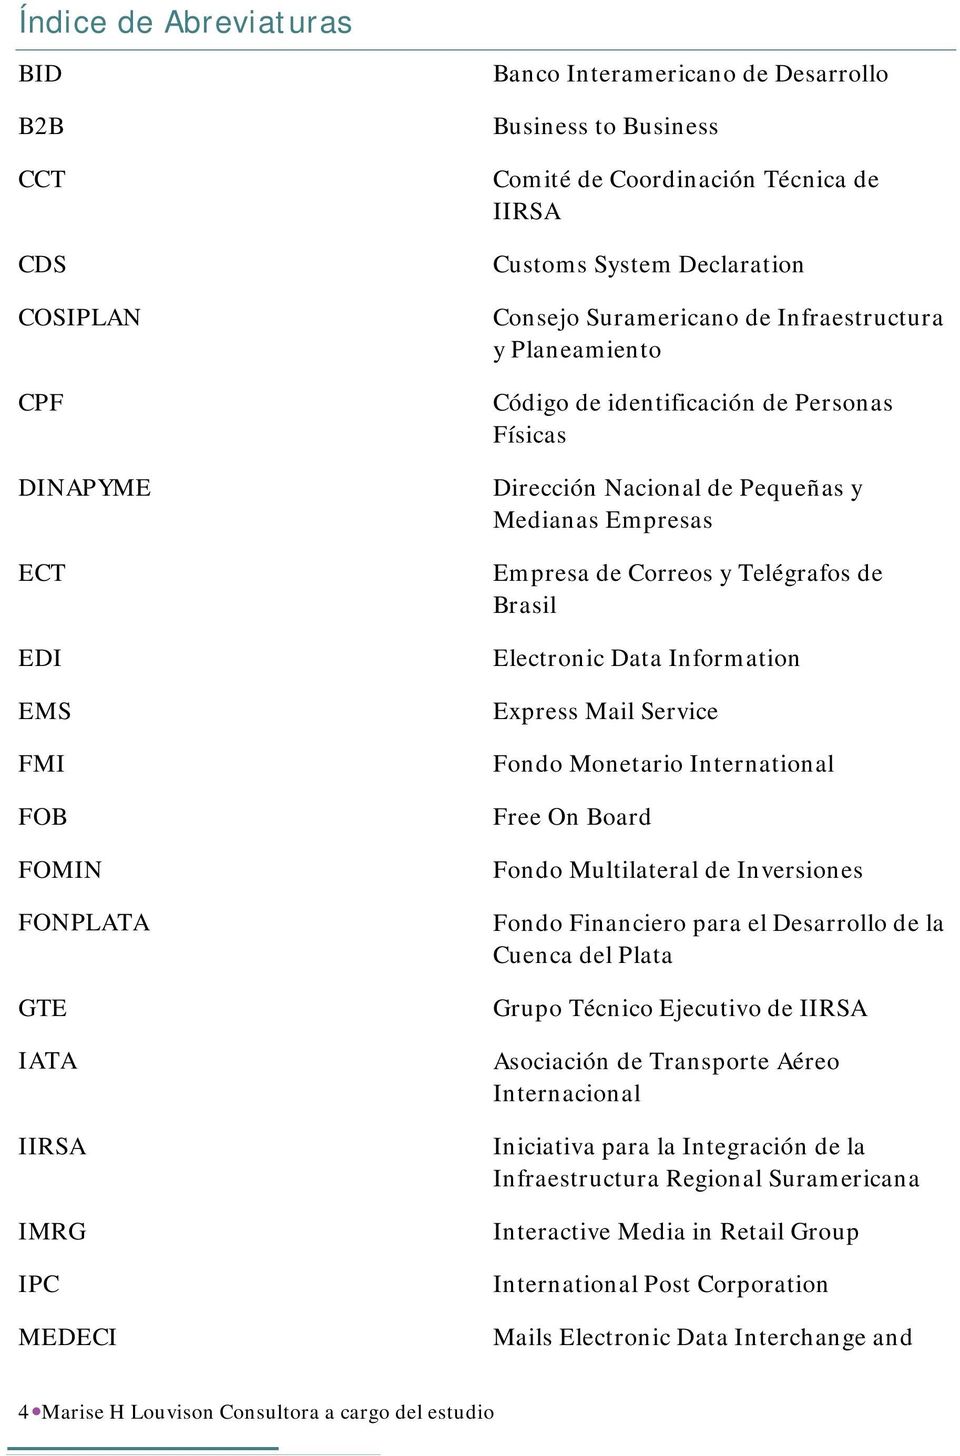 Empresas Empresa de Correos y Telégrafos de Brasil Electronic Data Information Express Mail Service Fondo Monetario International Free On Board Fondo Multilateral de Inversiones Fondo Financiero para